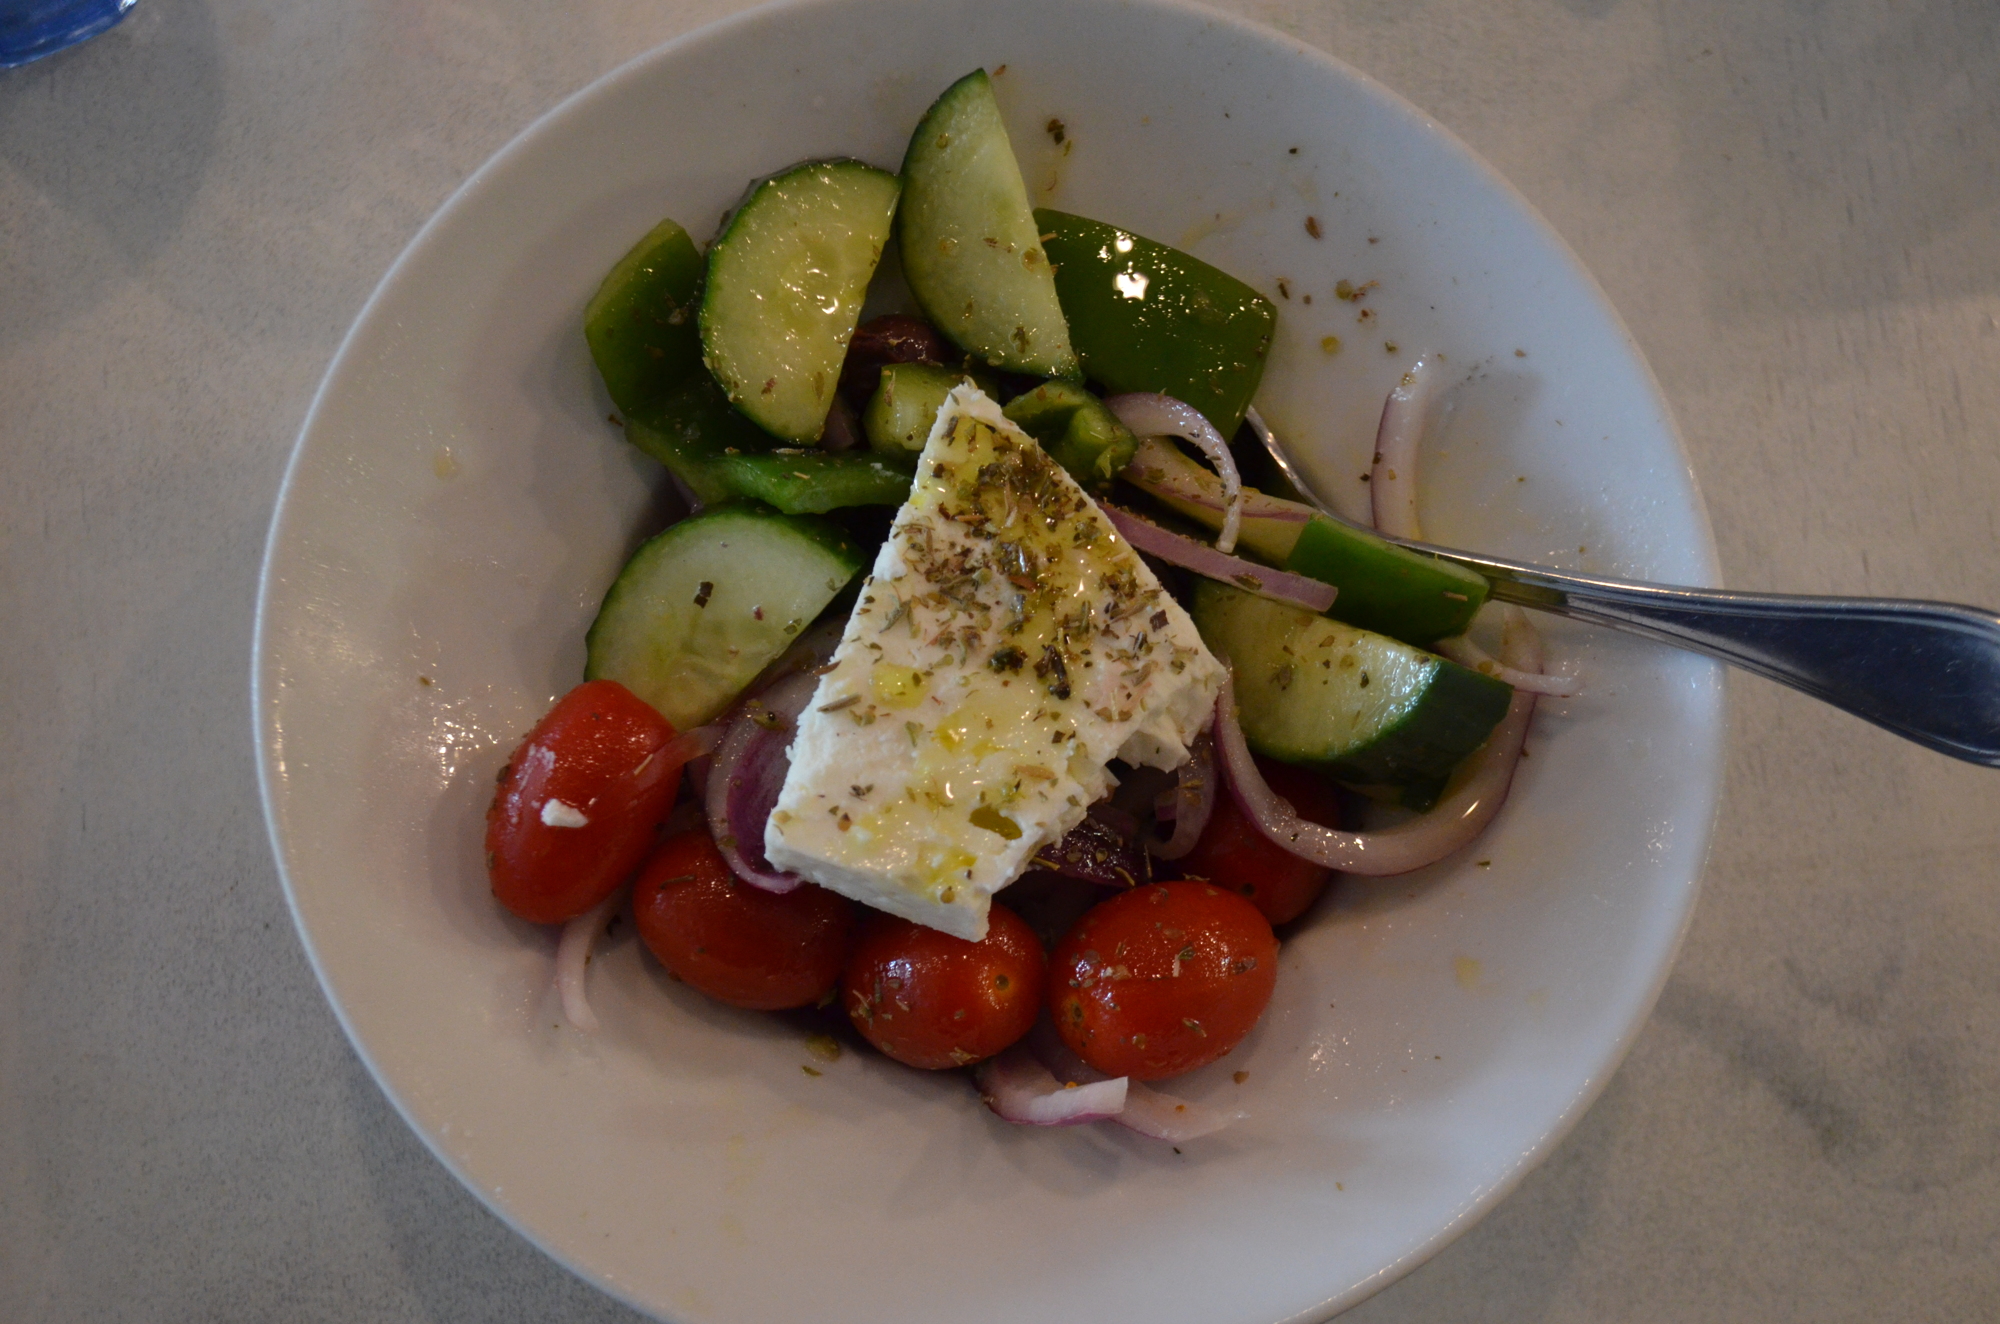 The Greek Salad at Blu Kouzina is $13.